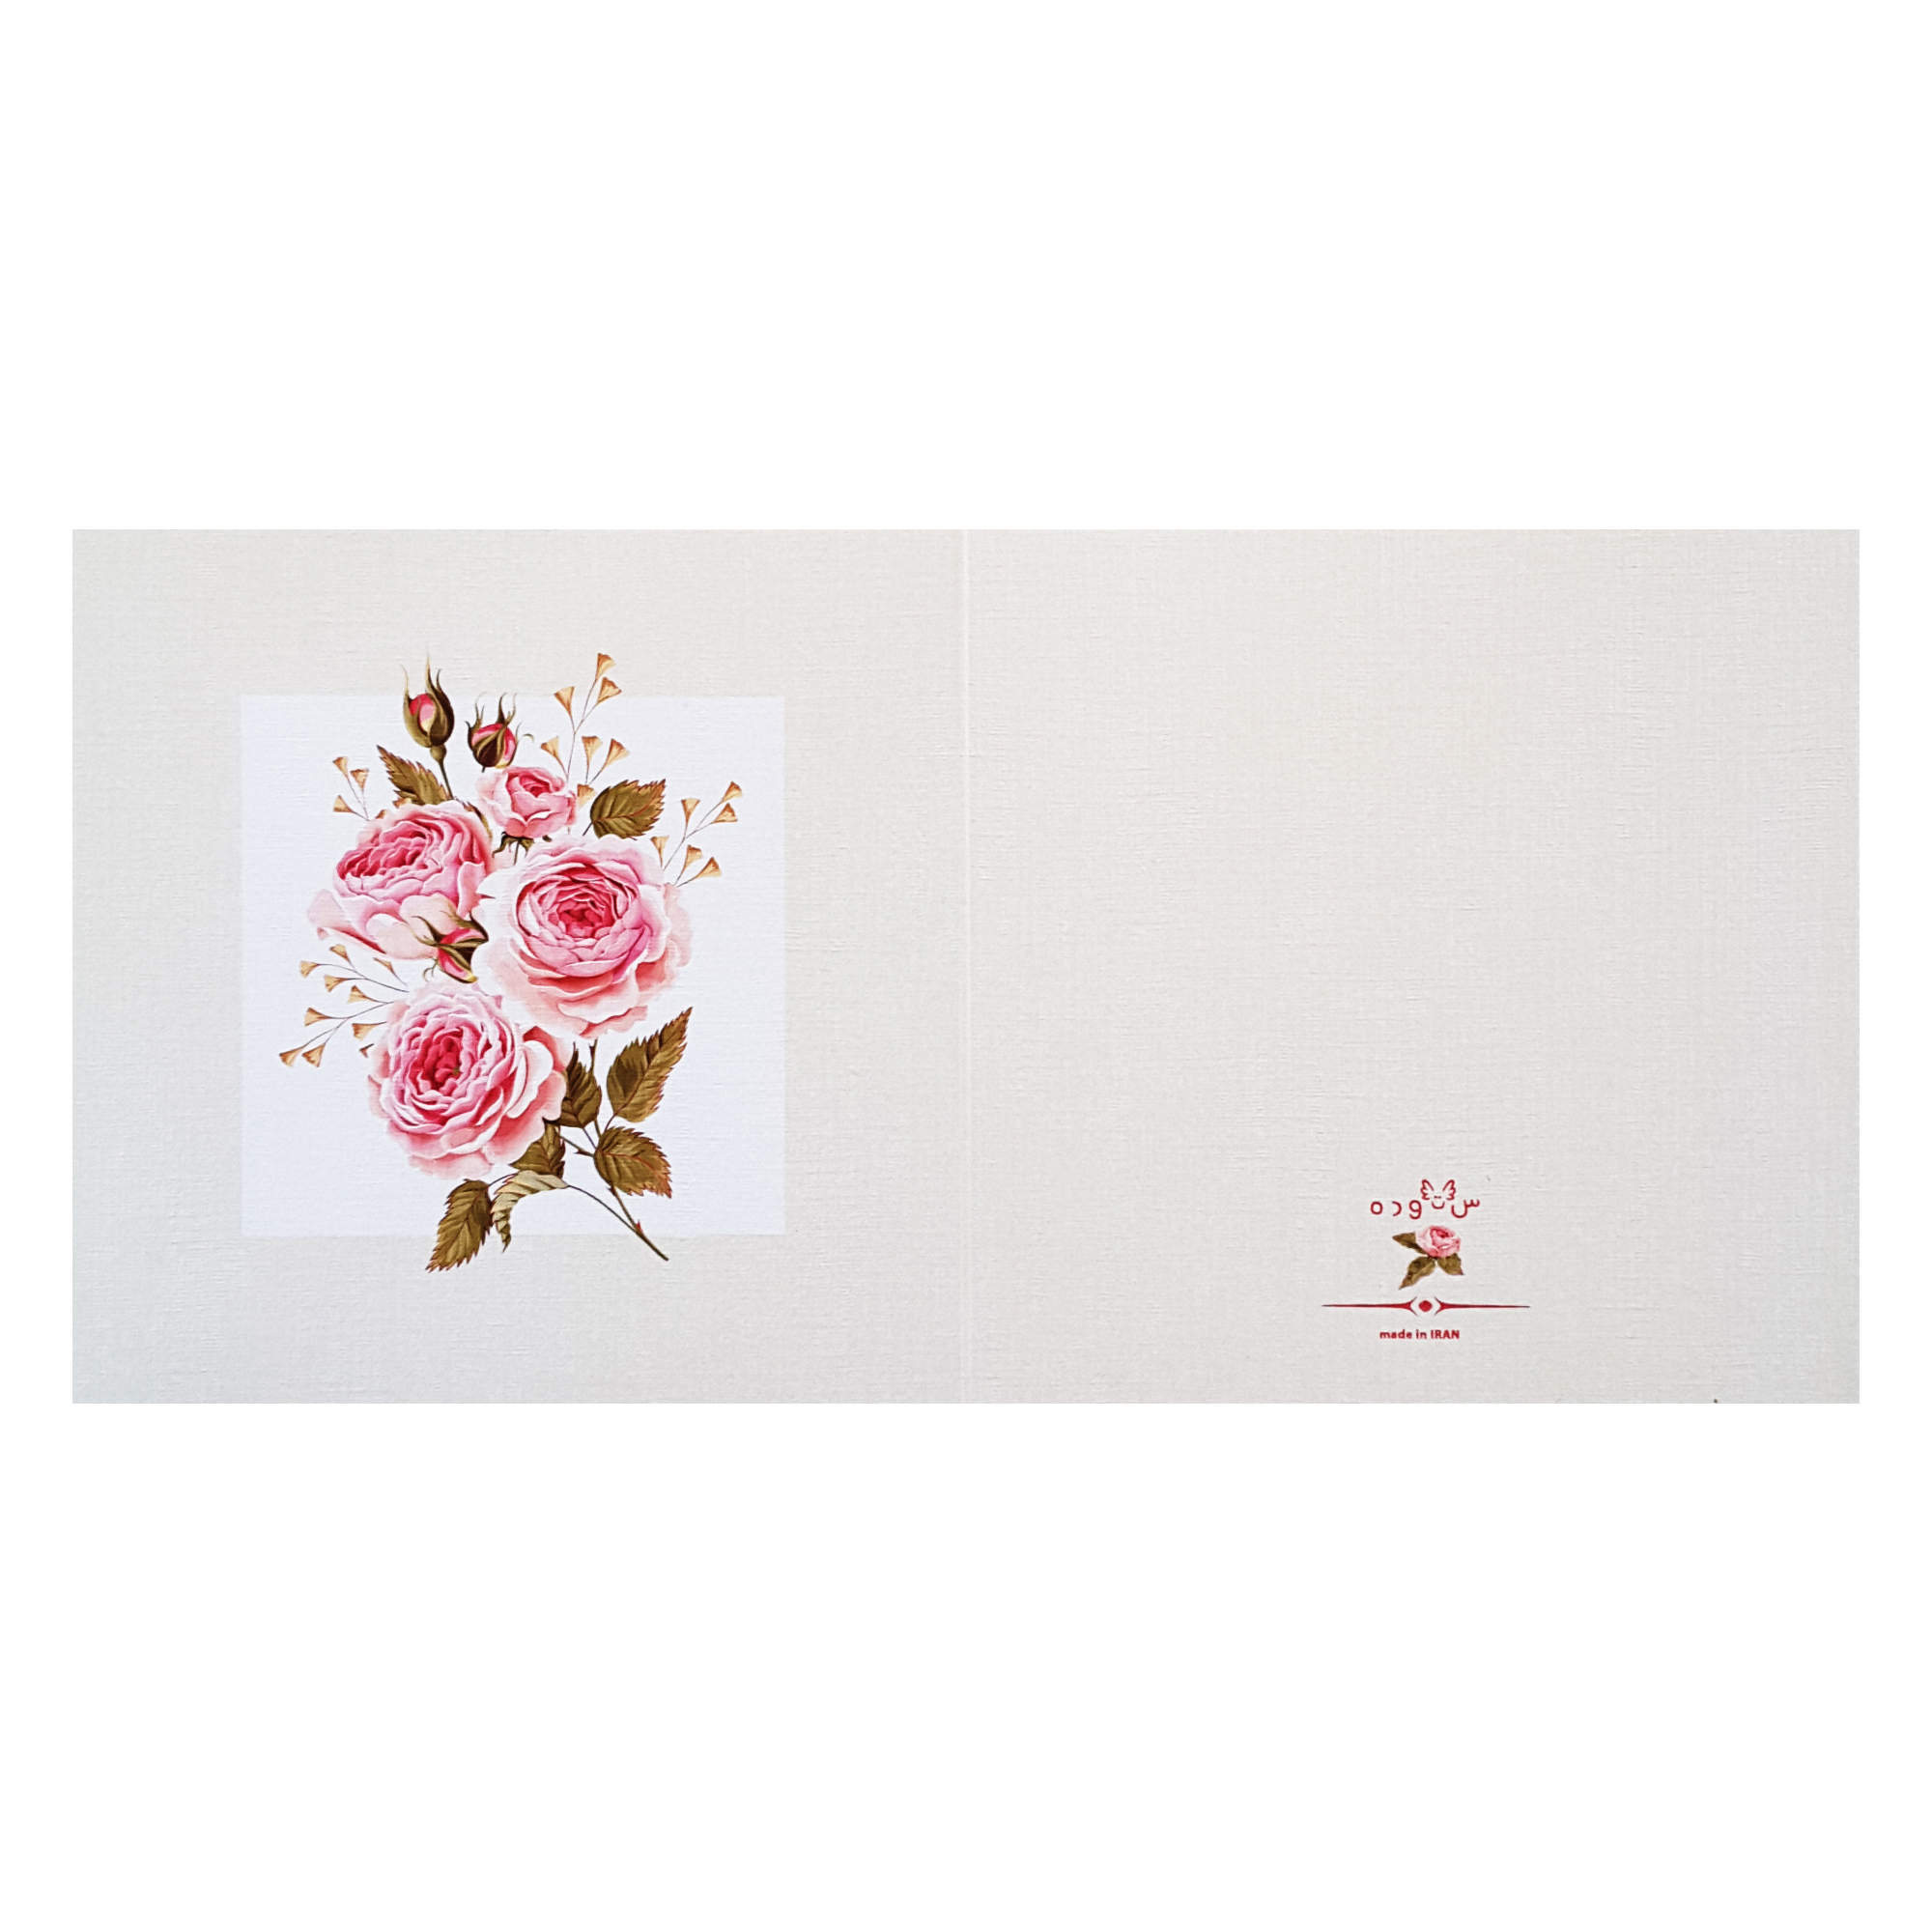 کارت پستال ستوده مدل گلهای رز 01